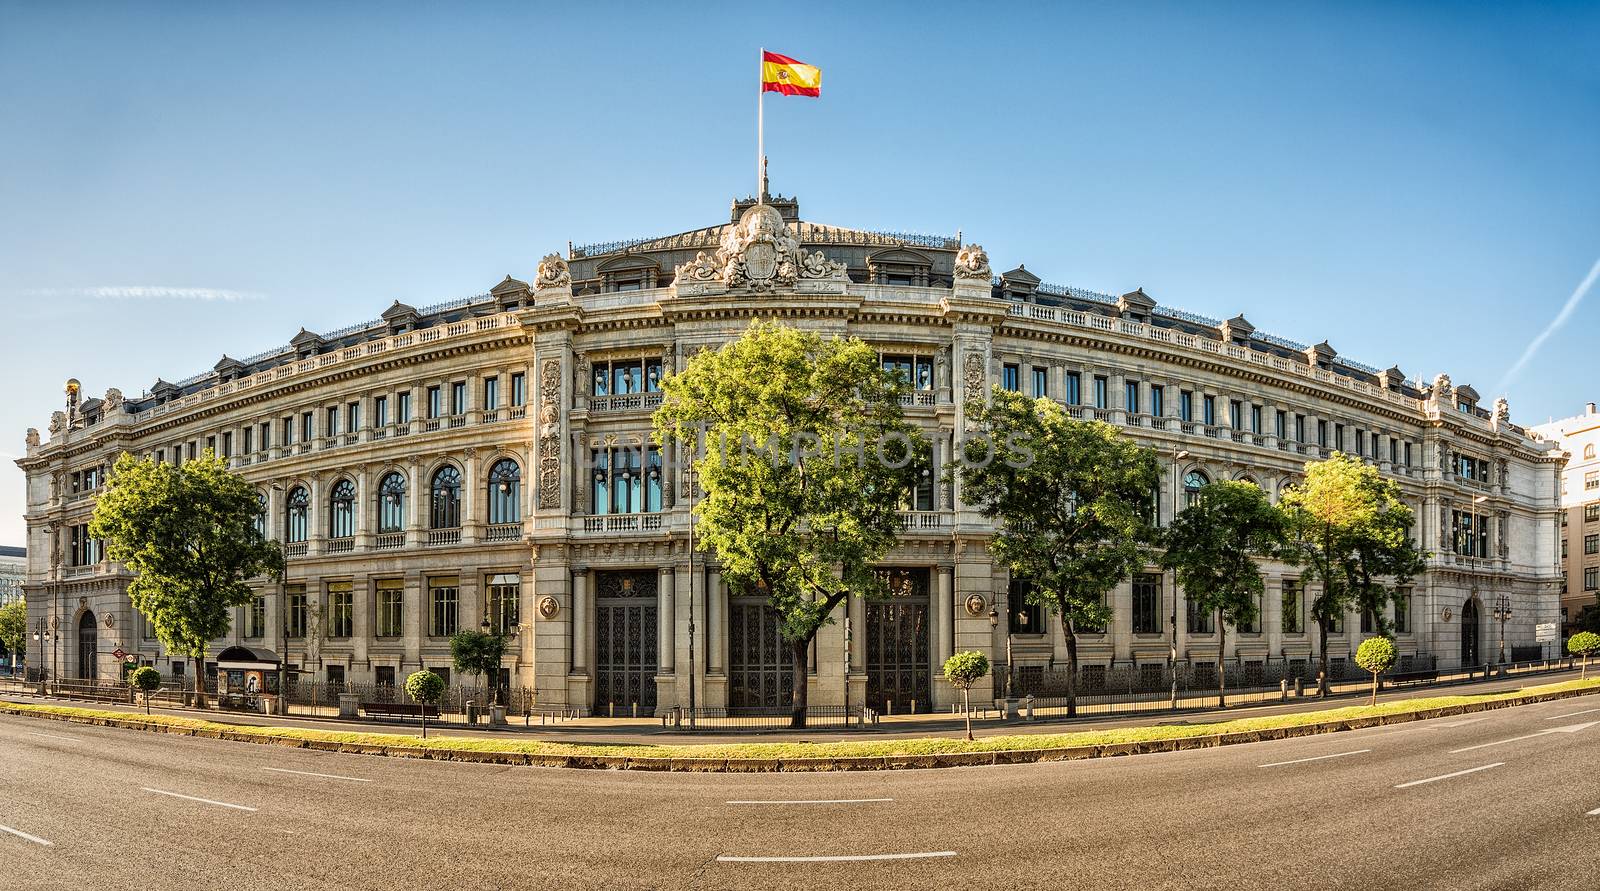 Bank of Spain by mot1963